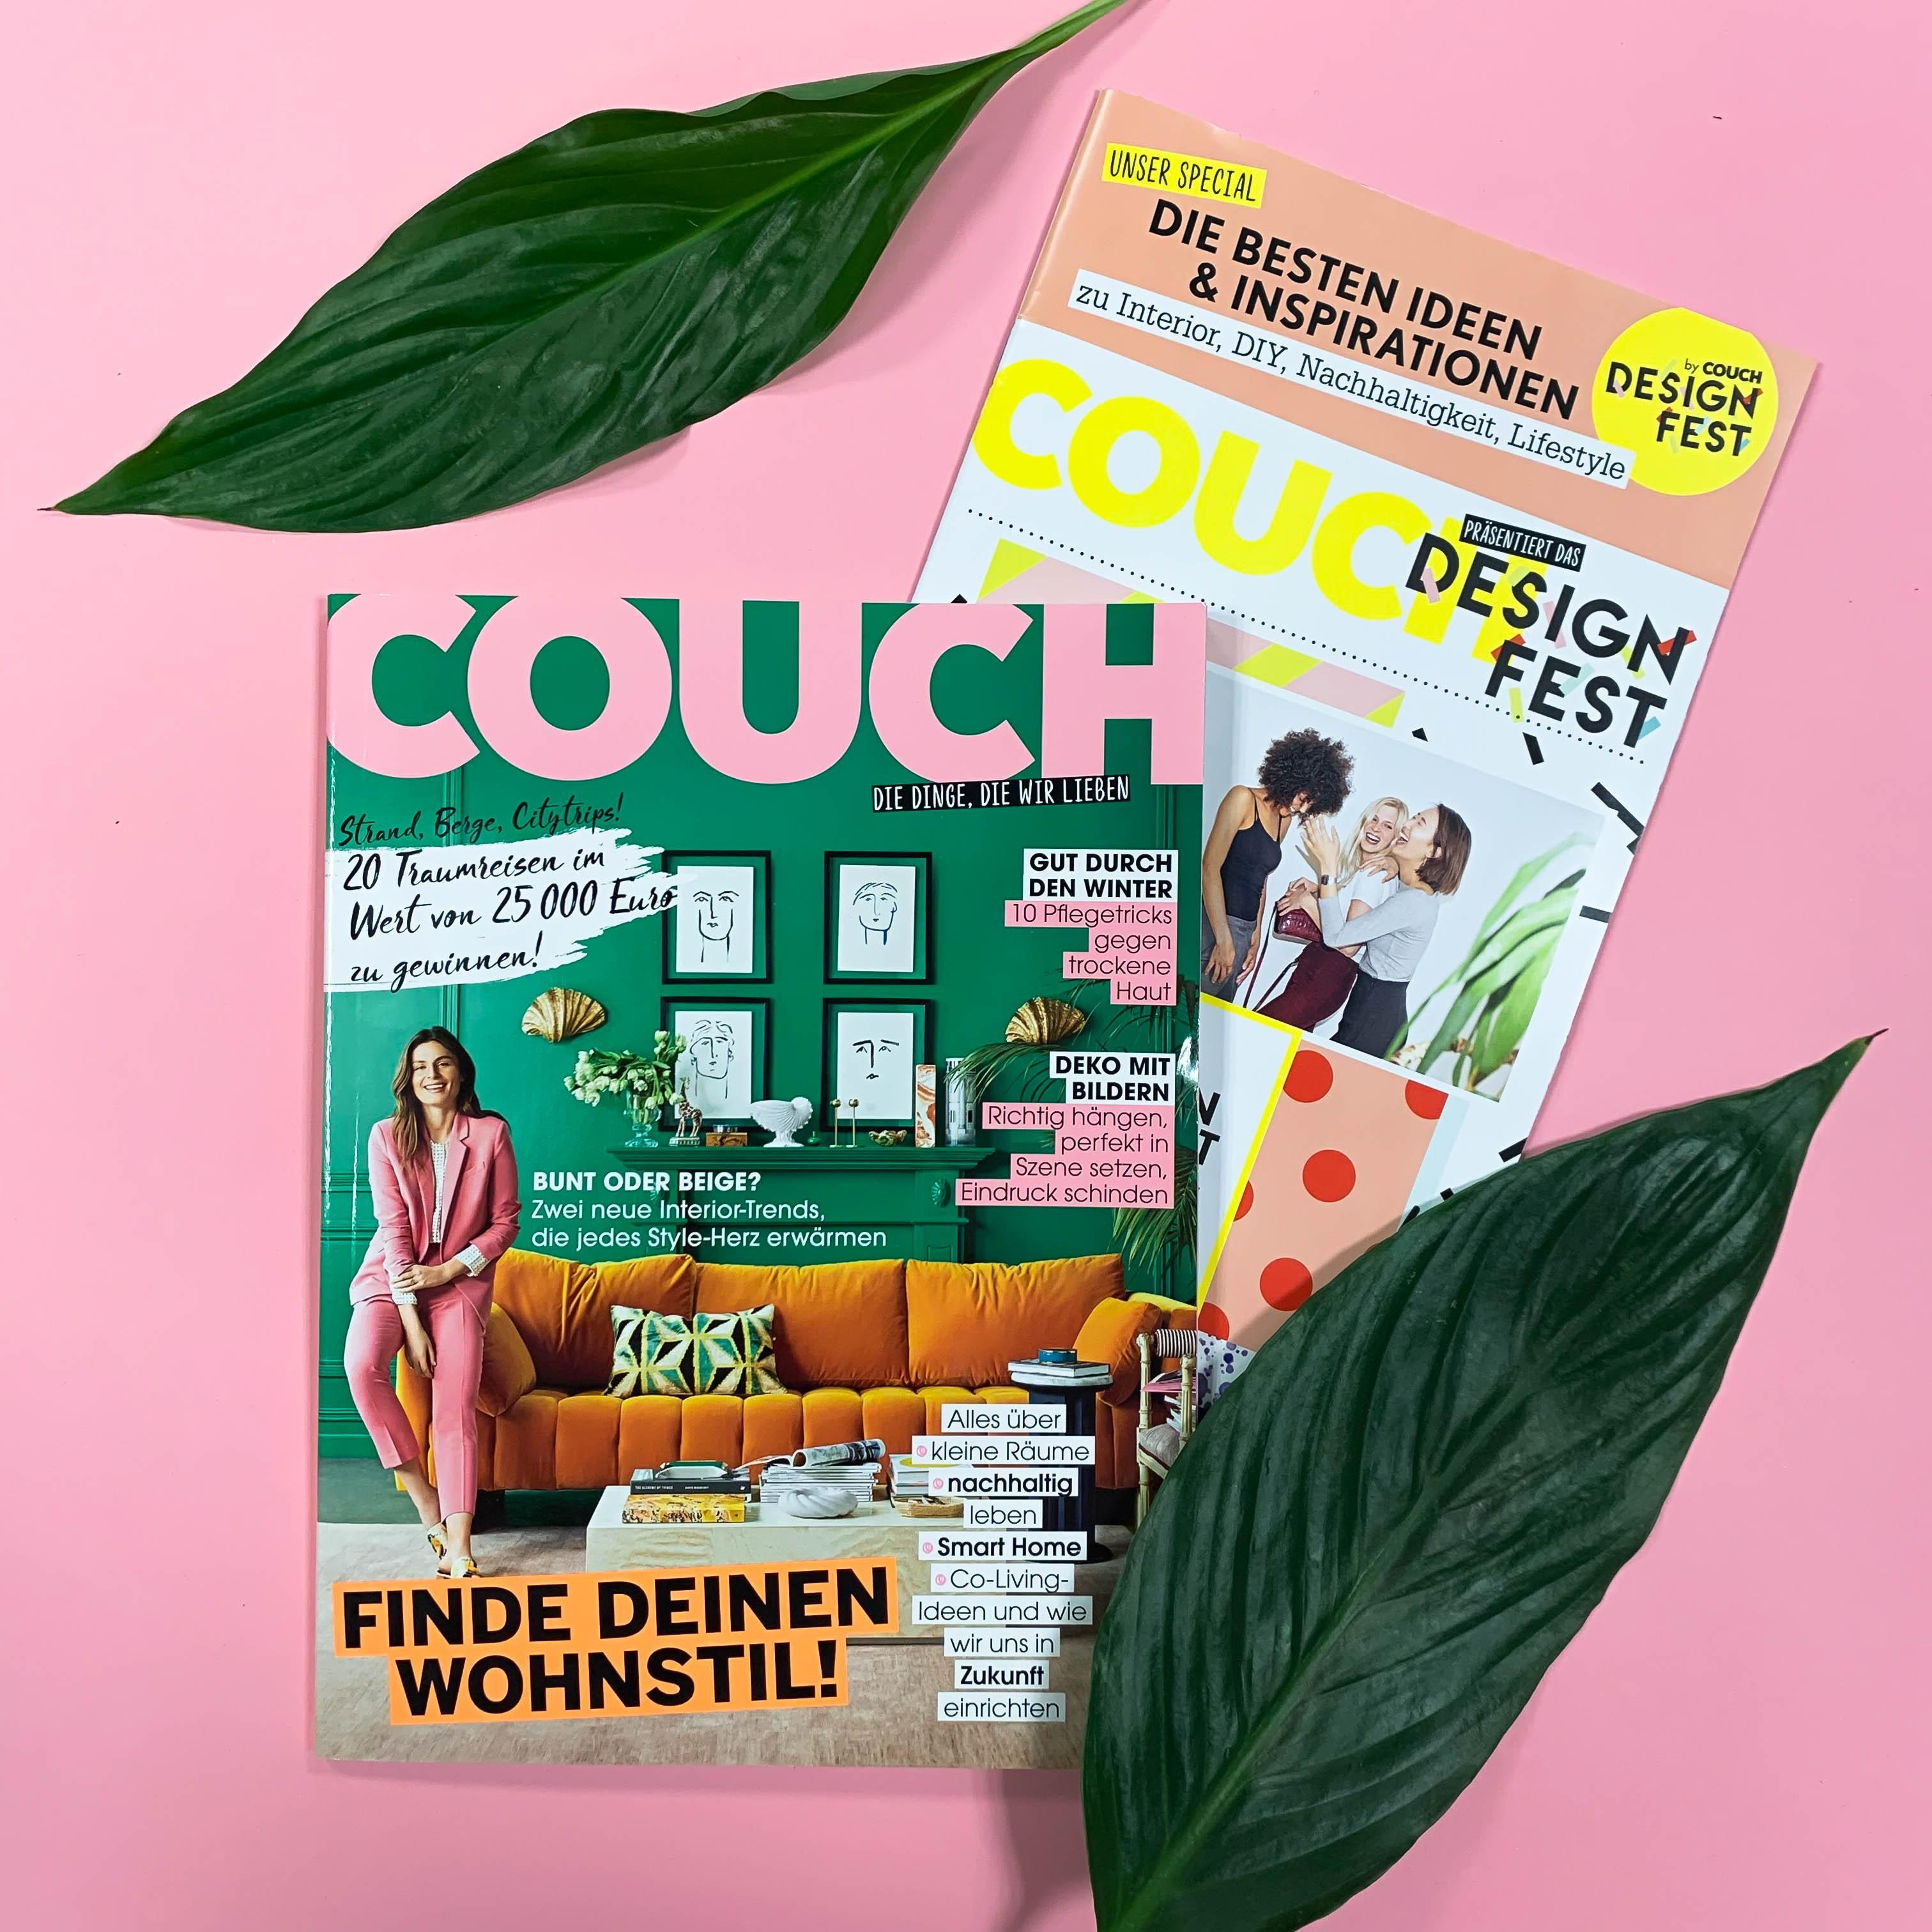 Wir starten bunt ins neue Jahr! Ab heute gibt's die neue COUCH + Designfest-Special! #COUCHMagazin #COUCHAbo